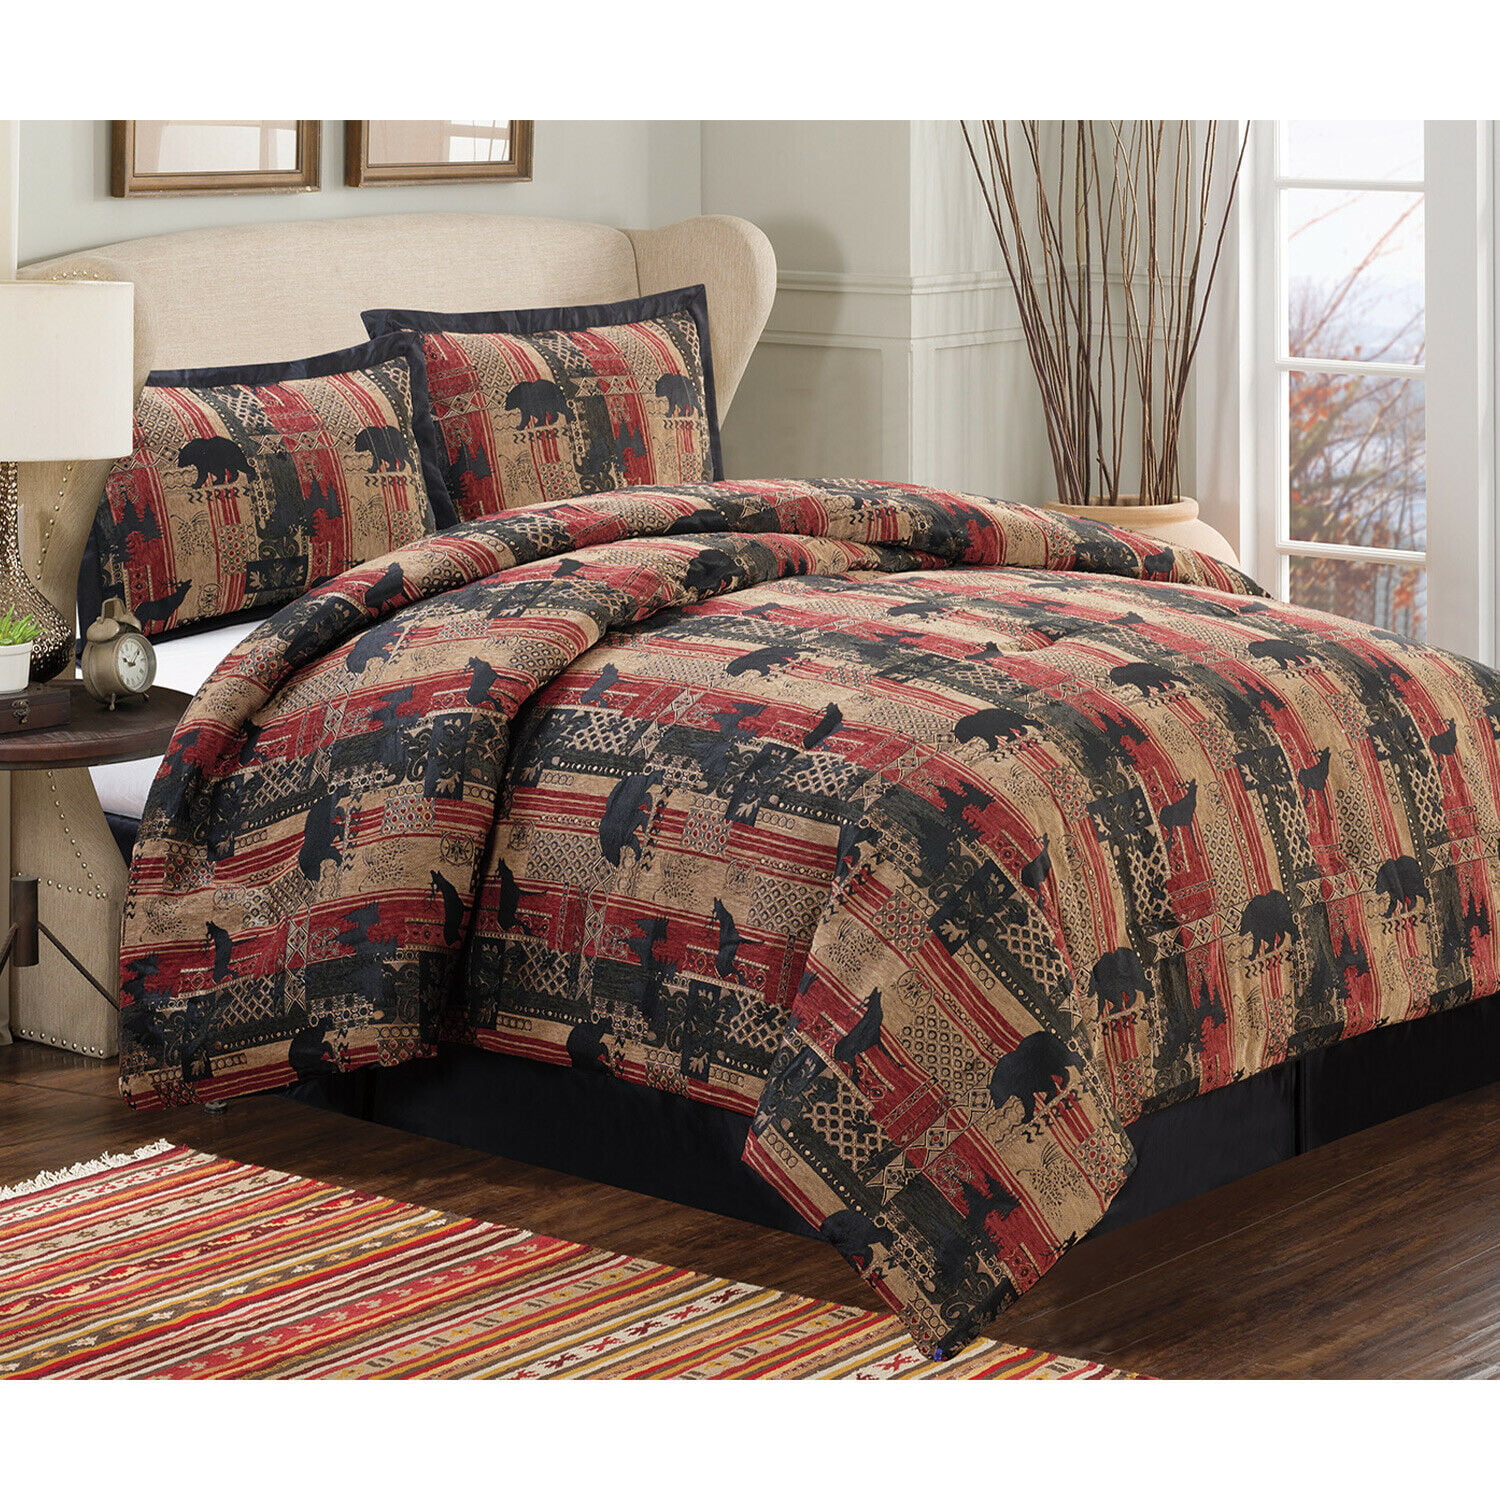 Oversized King Comforter Bedding Set, Oversized King Duvet Cover Set